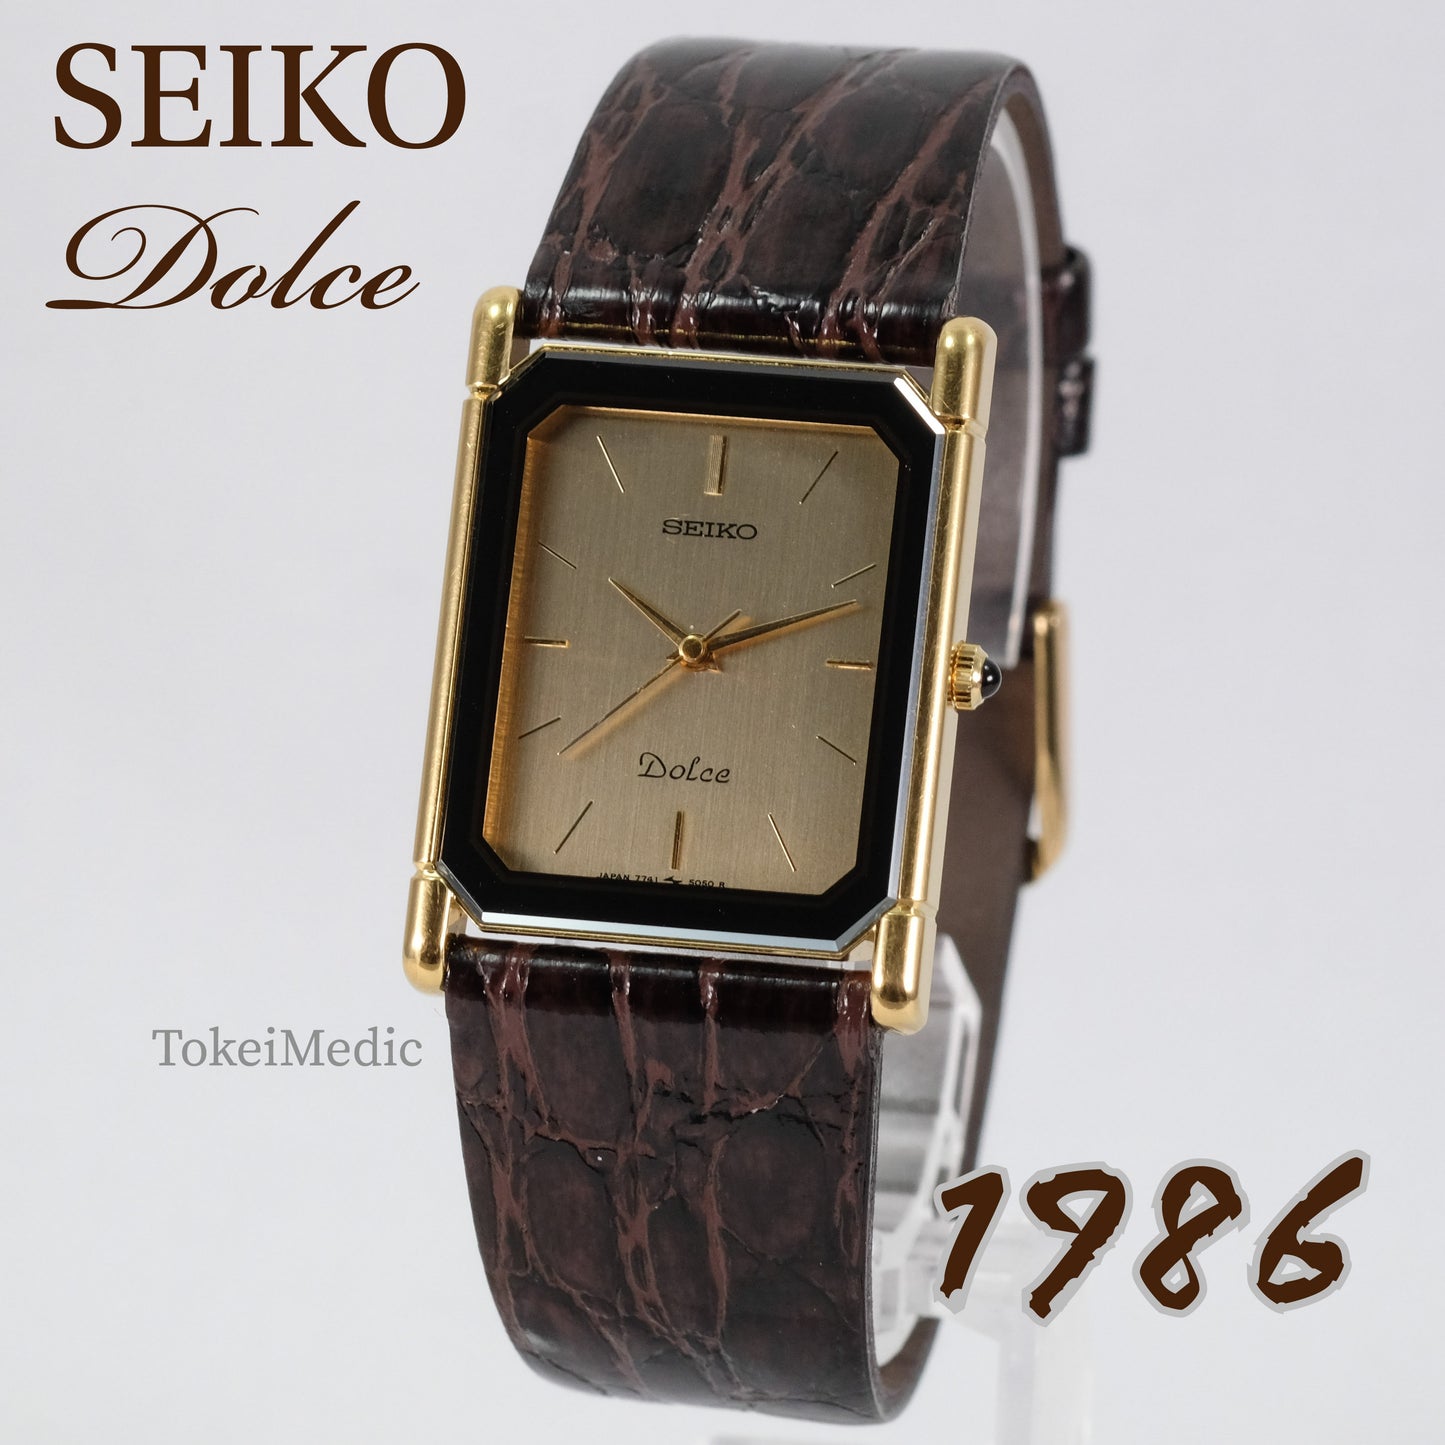 1986 Seiko Dolce 7741-5050